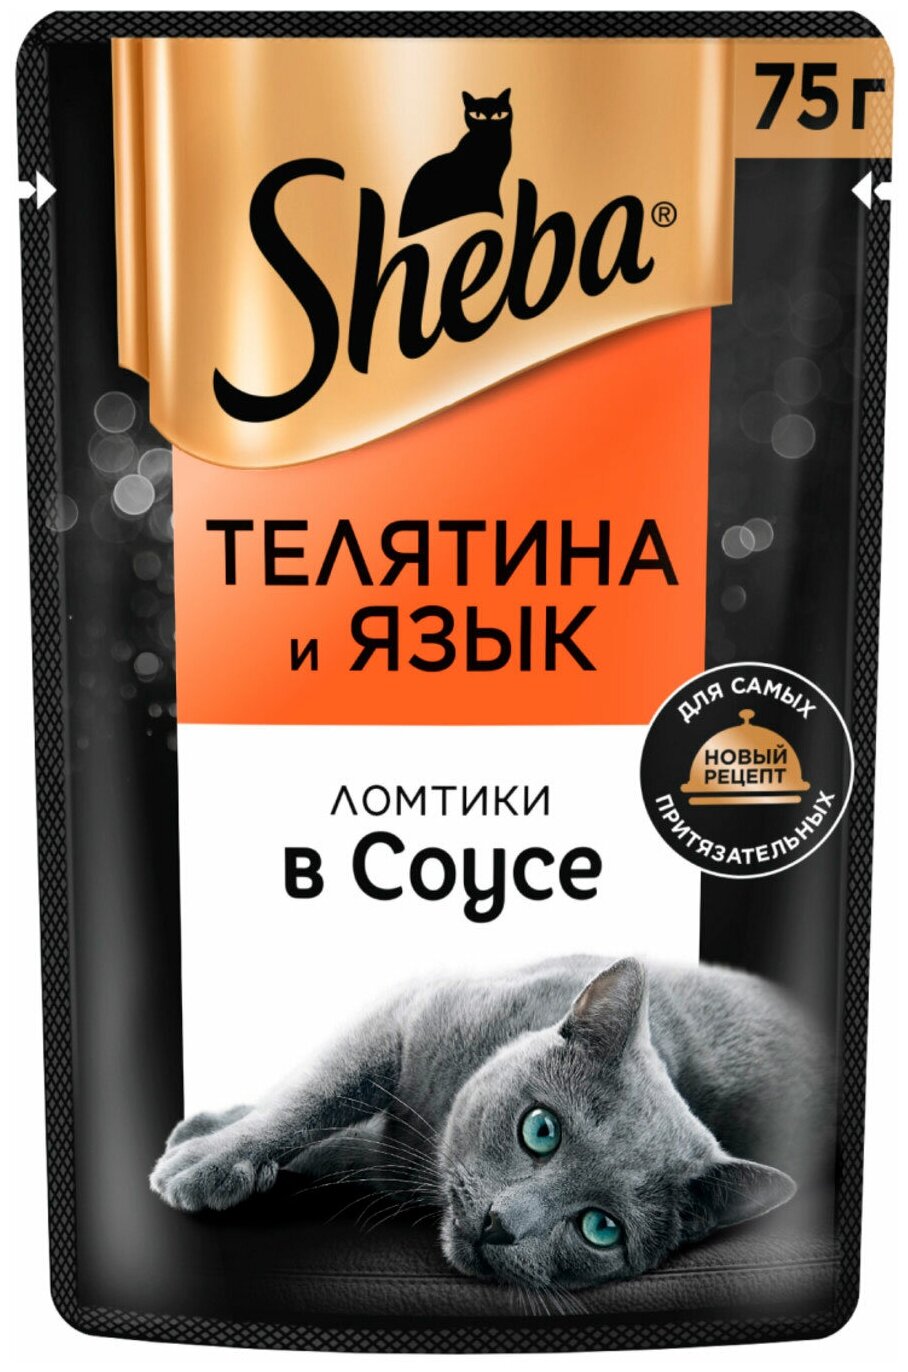 SHEBA для взрослых кошек ломтики в соусе с телятиной и языком (75 гр)